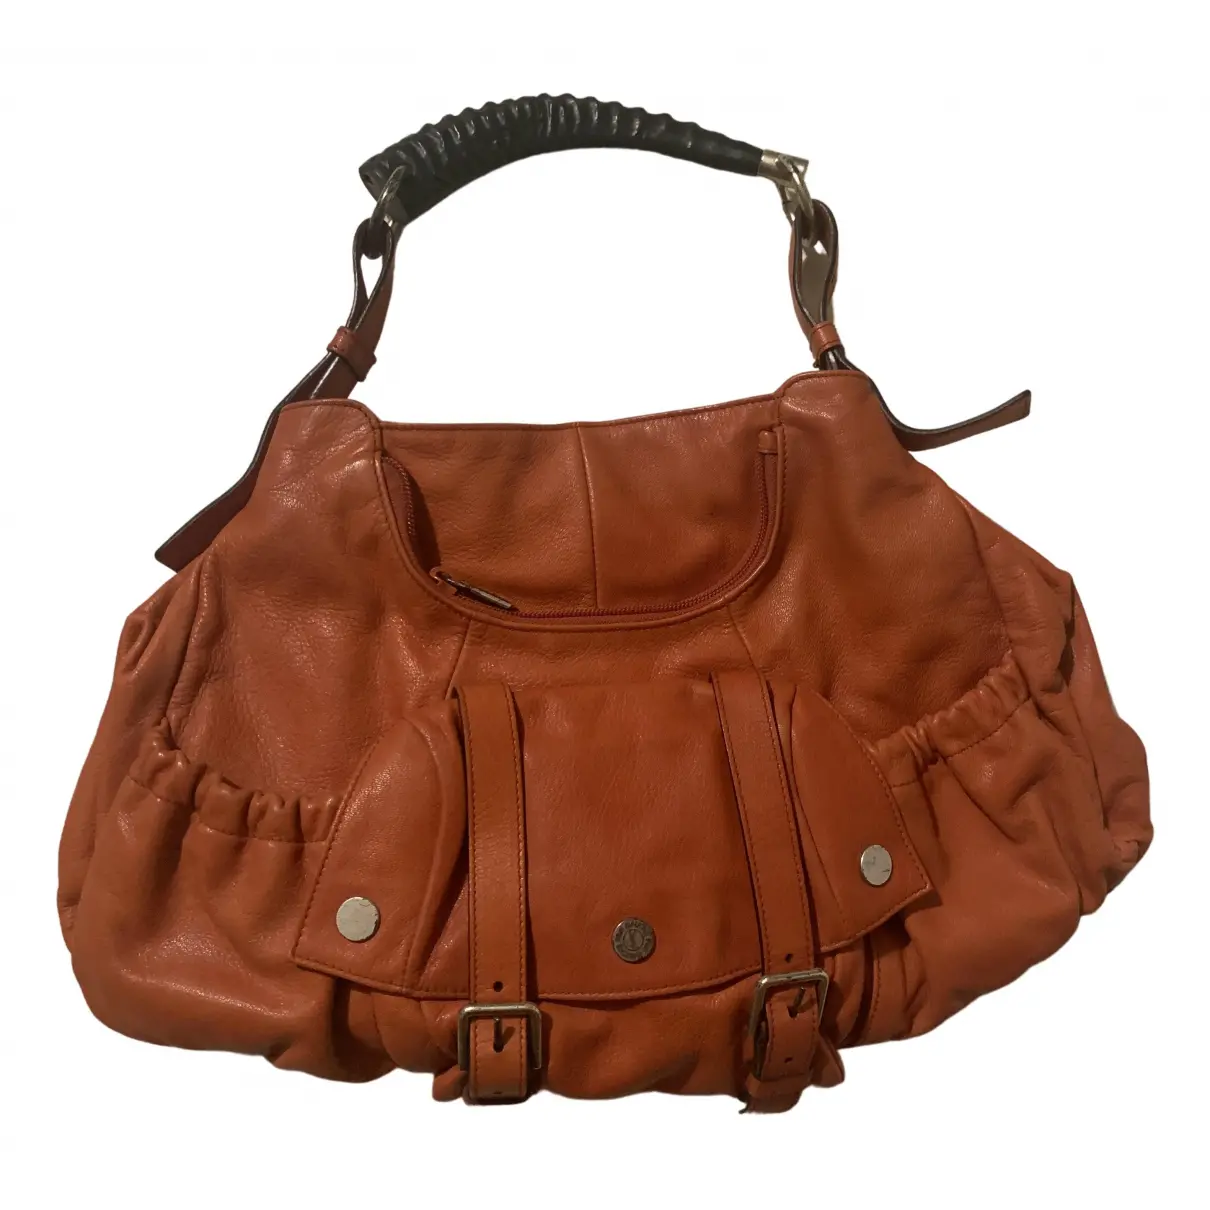 Mombasa leather bag Yves Saint Laurent - Vintage